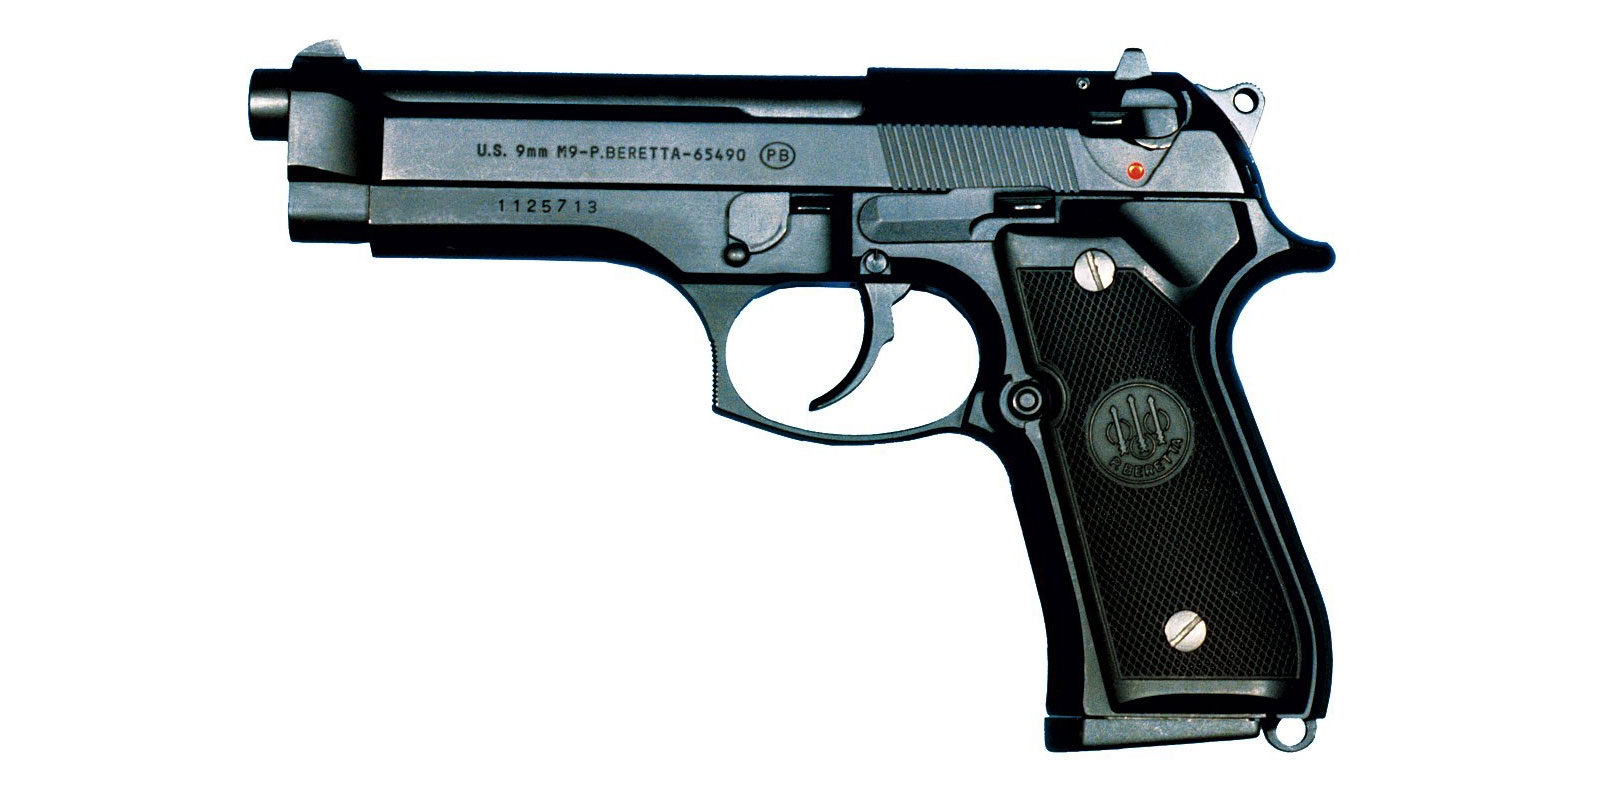 M9 Semiautomatic Pistol